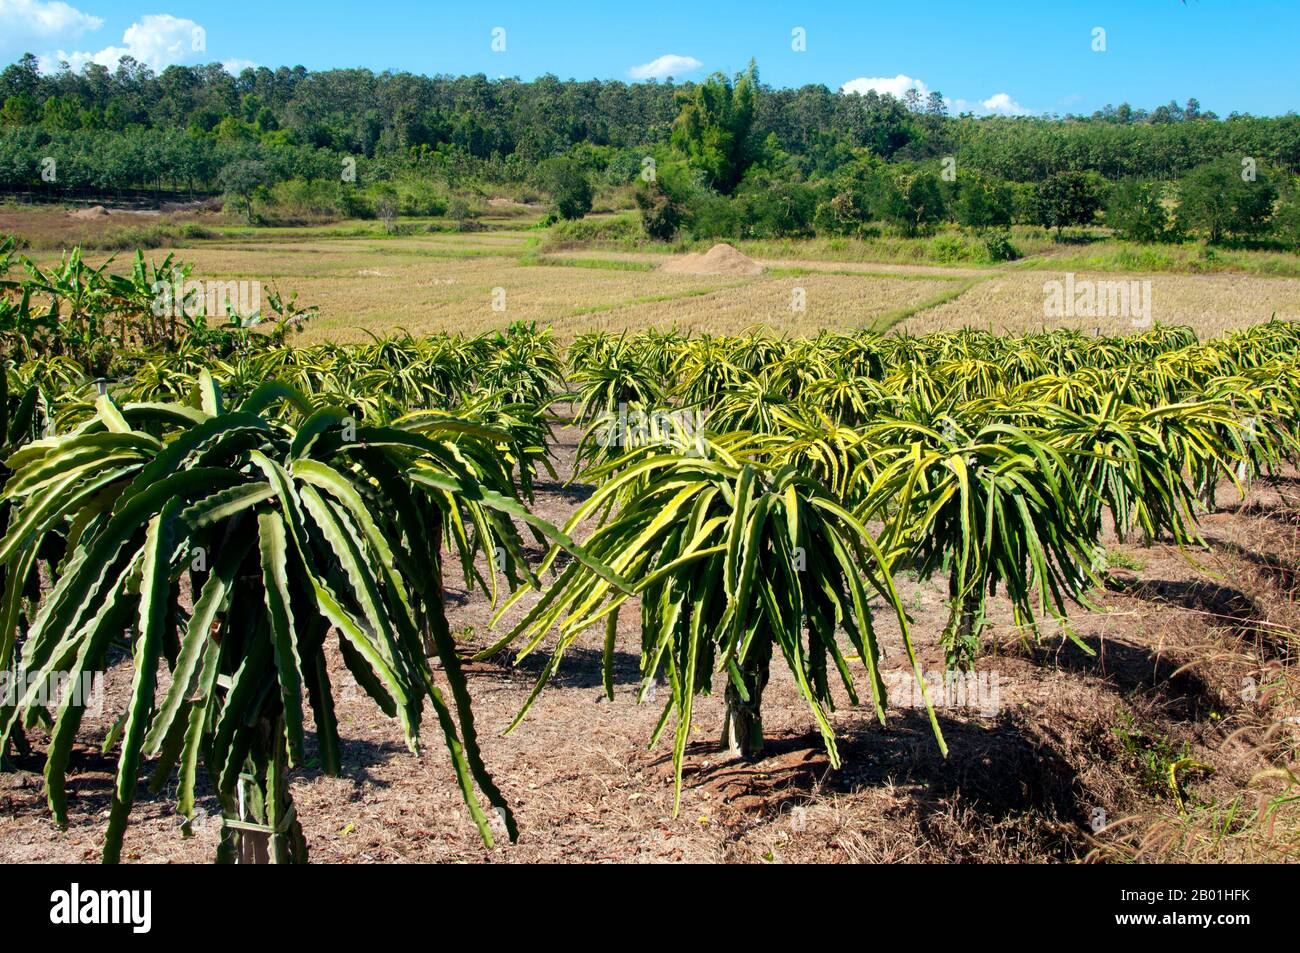 Thailand: Aloe Vera Plantation, Provinz Loei. Die Provinz Loei (Thai: เลย) befindet sich im oberen Nordosten Thailands. Die benachbarten Provinzen sind (von Osten nach rechts) Nong Khai, Udon Thani, Nongbua Lamphu, Khon Kaen, Phetchabun, Phitsanulok. Im Norden grenzt sie an die Provinzen Xaignabouli und Vientiane in Laos. Die Provinz ist von niedrigen Bergen bedeckt, während die Hauptstadt Loei in einem fruchtbaren Becken liegt. Der Fluss Loei, der durch die Provinz fließt, ist ein Nebenfluss des Mekong, der zusammen mit dem kleineren Fluss Hueang die nördliche Grenze der Provinz mit dem benachbarten Laos bildet. Stockfoto